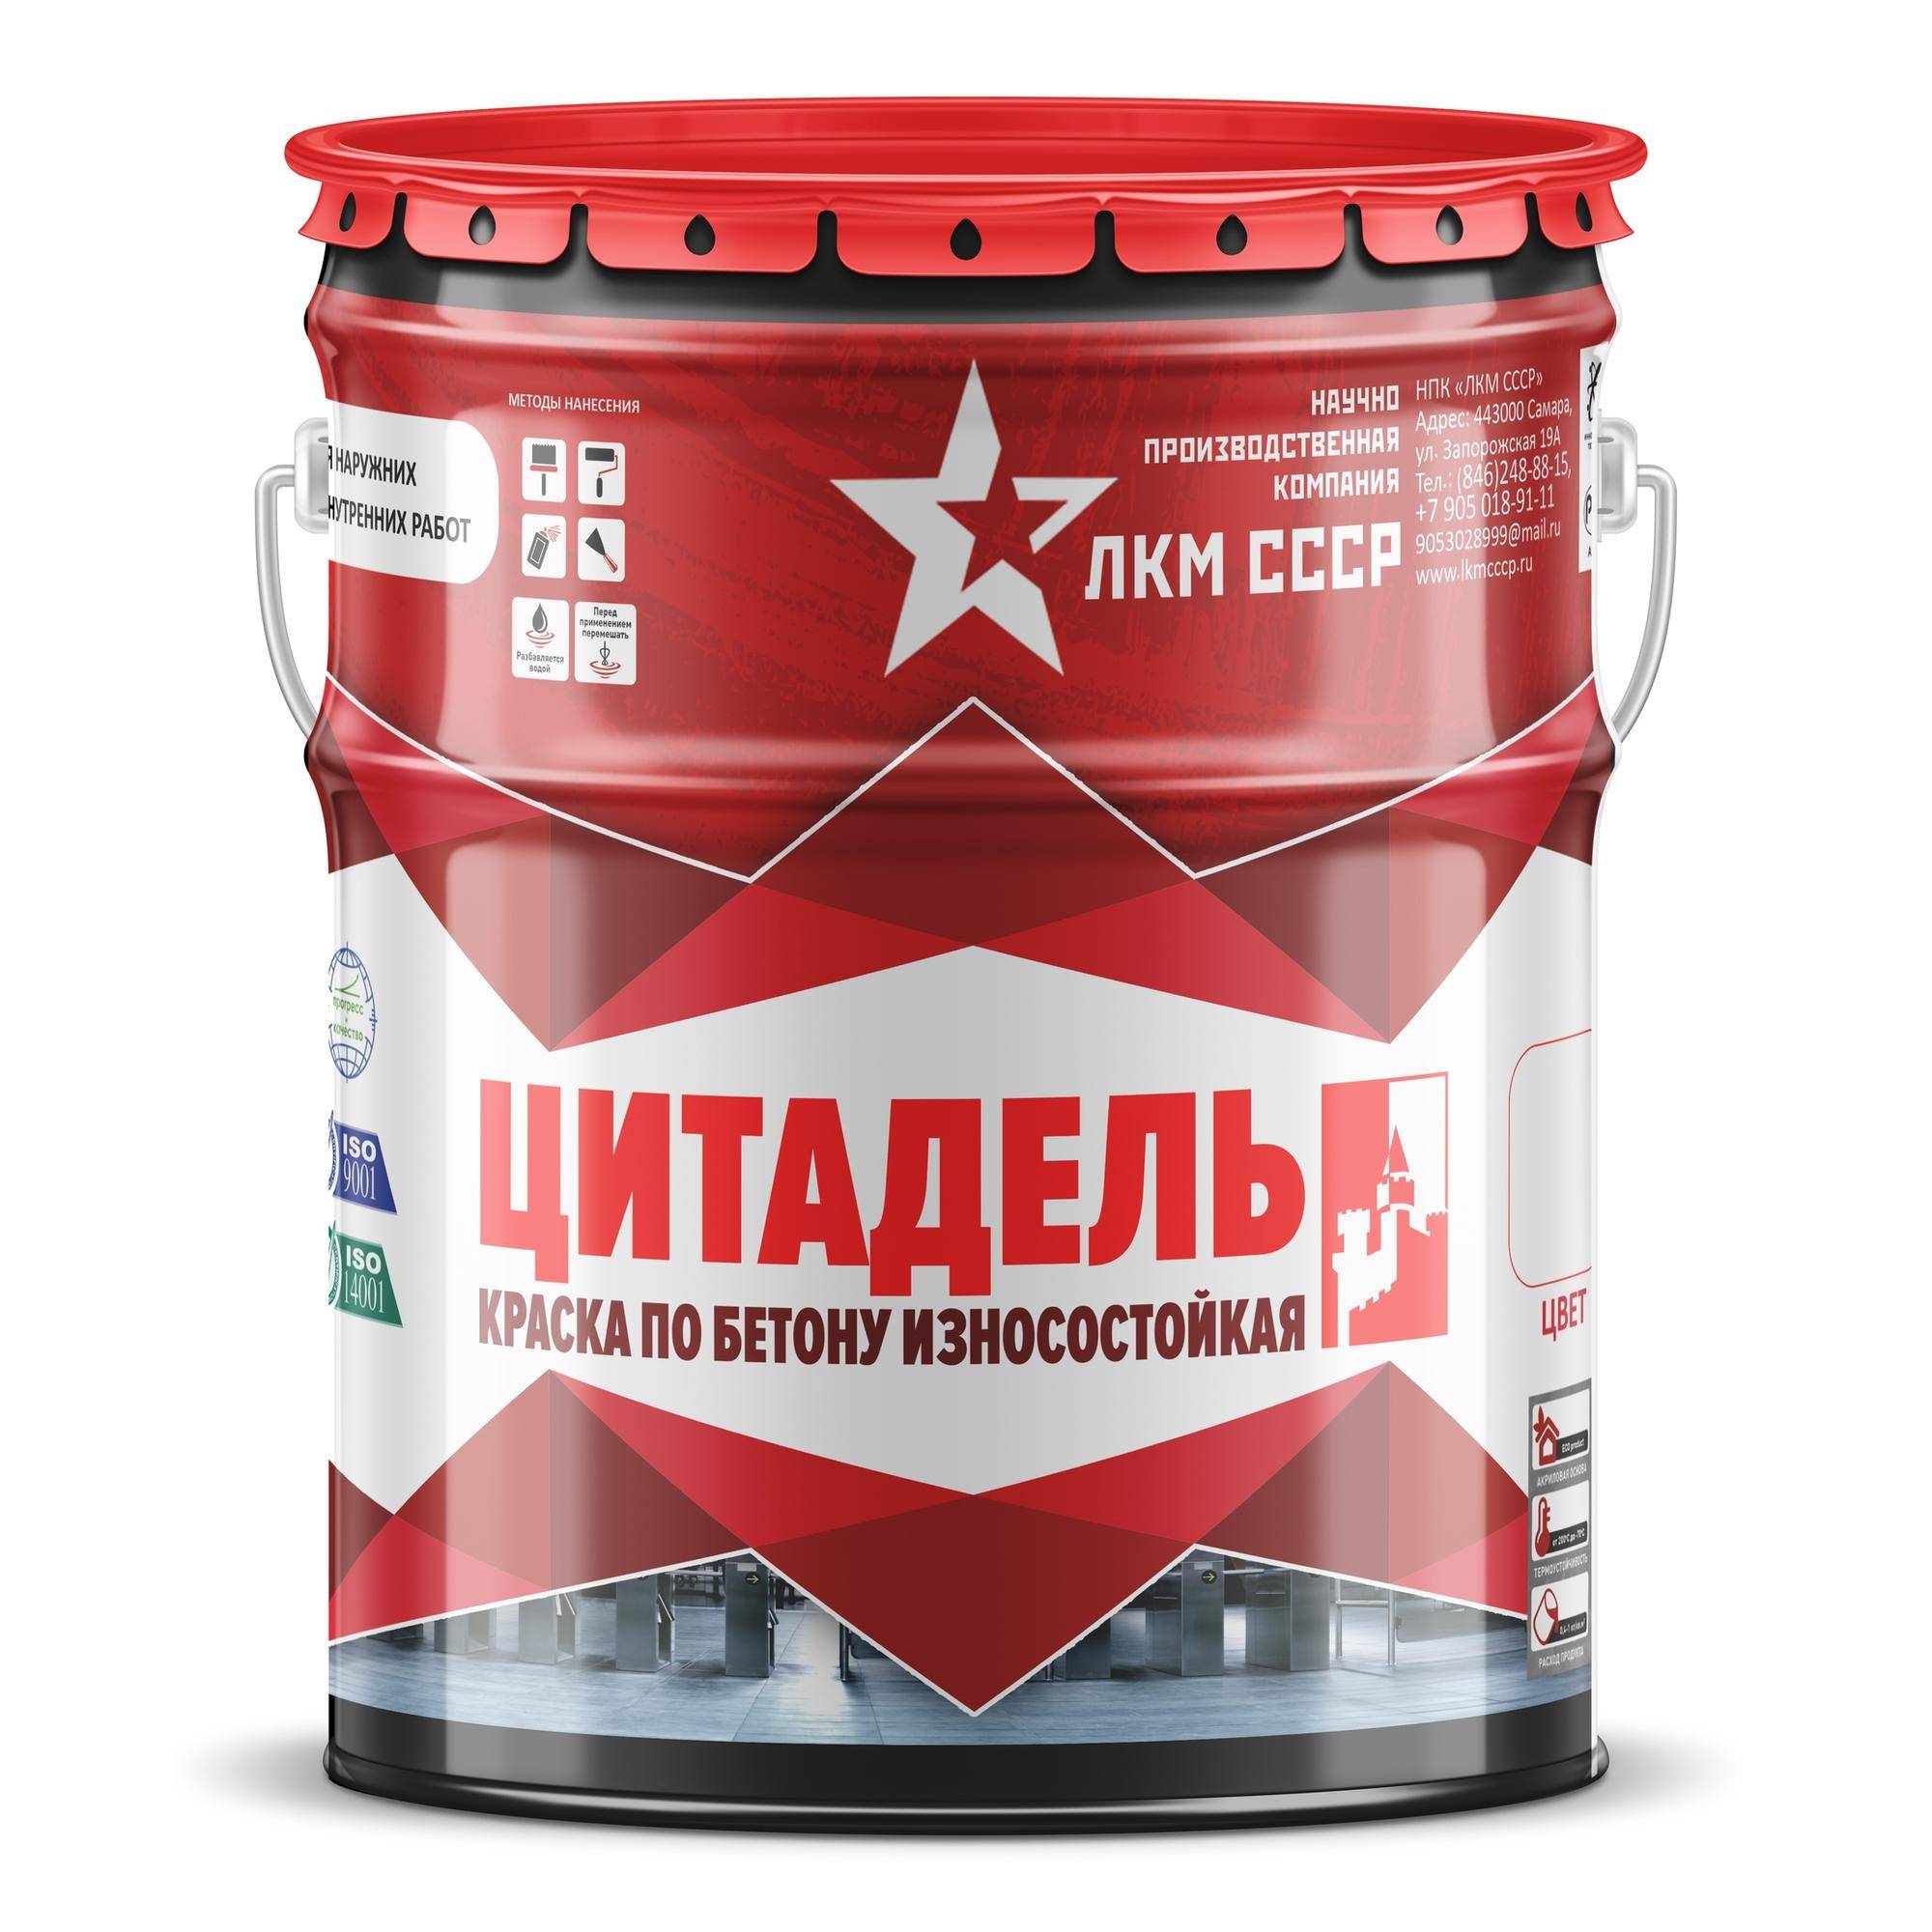 Всё ли вы знаете о применении полиуретановых лкм - 
kraski-laki-gruntovka.ru